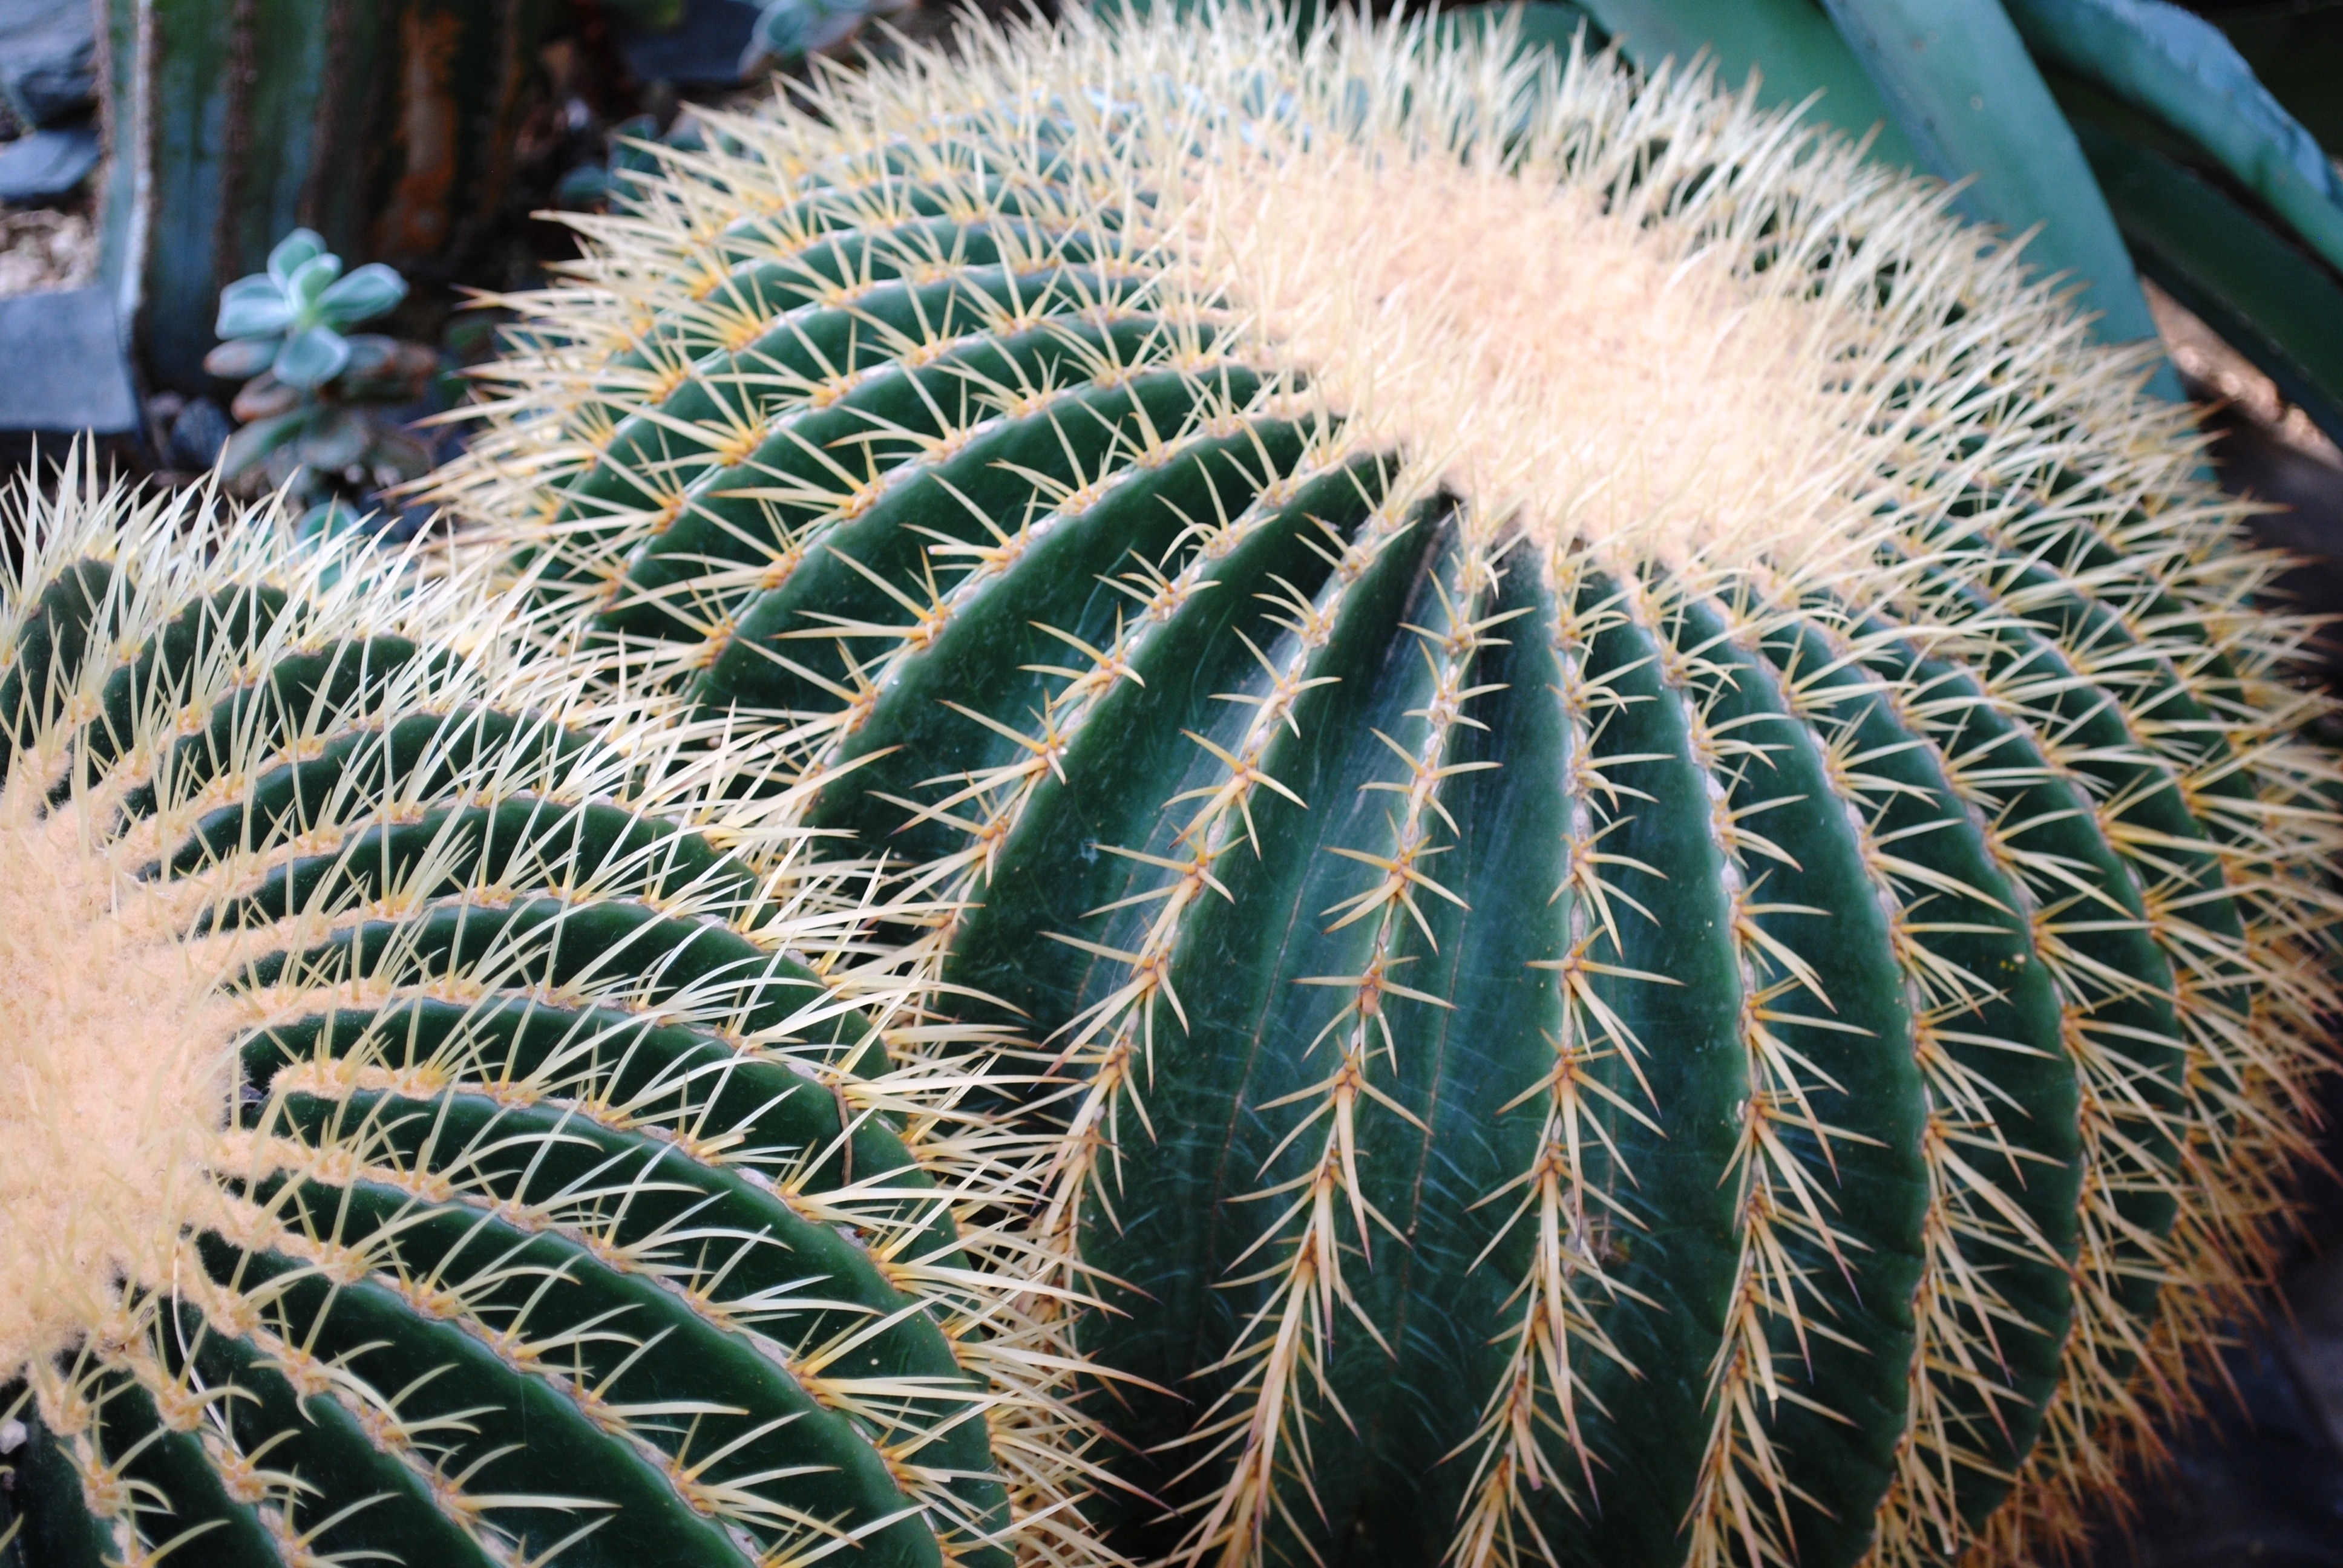 green cactus close up photography